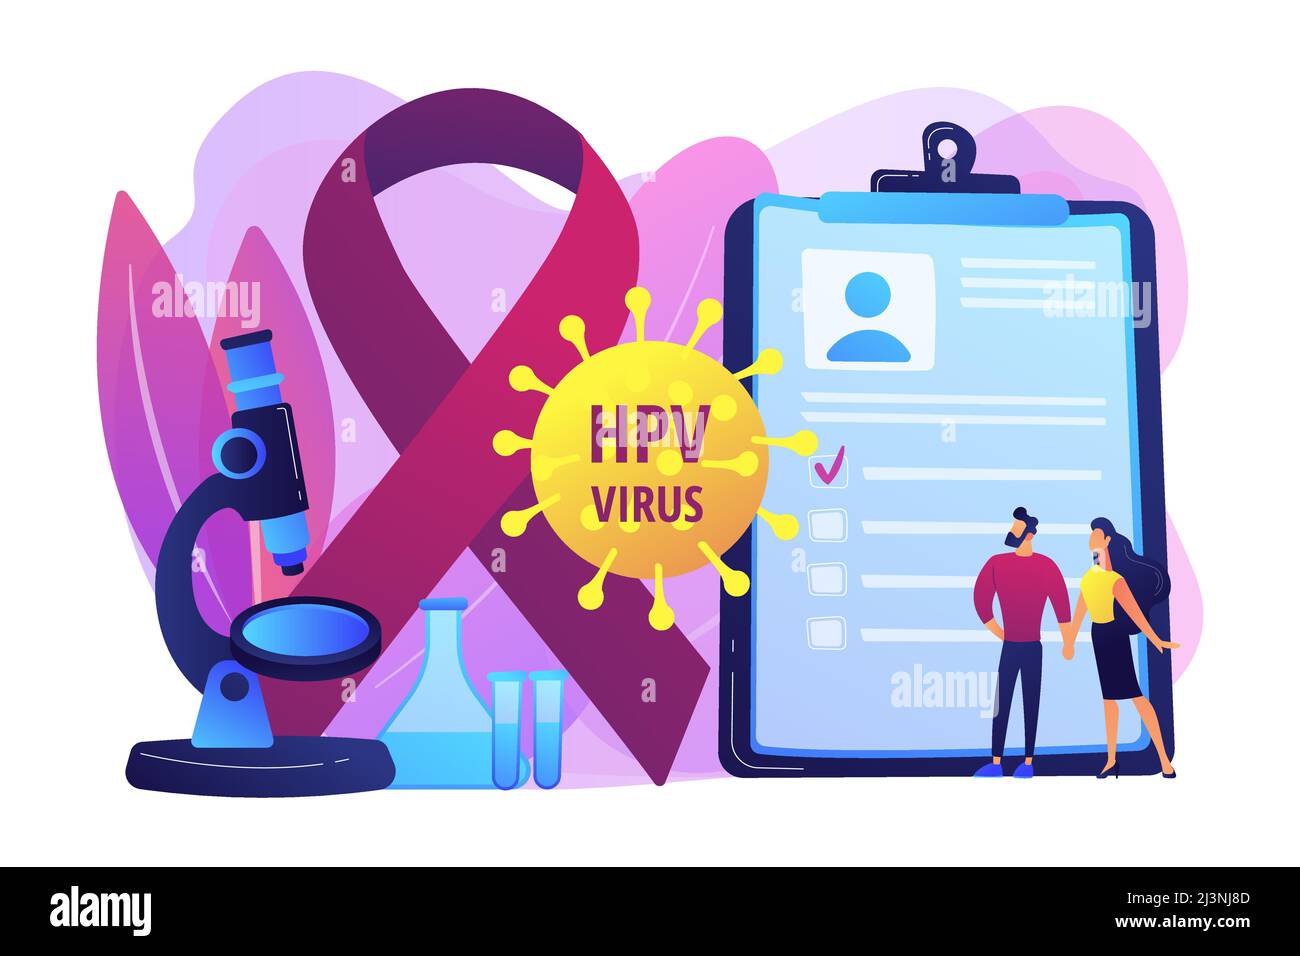 Entwicklung des humanen Papillomavirus. Krankheitssymptom. Risikofaktoren für HPV, HPV-Infektion führt zu Gebärmutterhalskrebs, Gebärmutterhalskrebs-Screening-Konzept. Br Stock Vektor